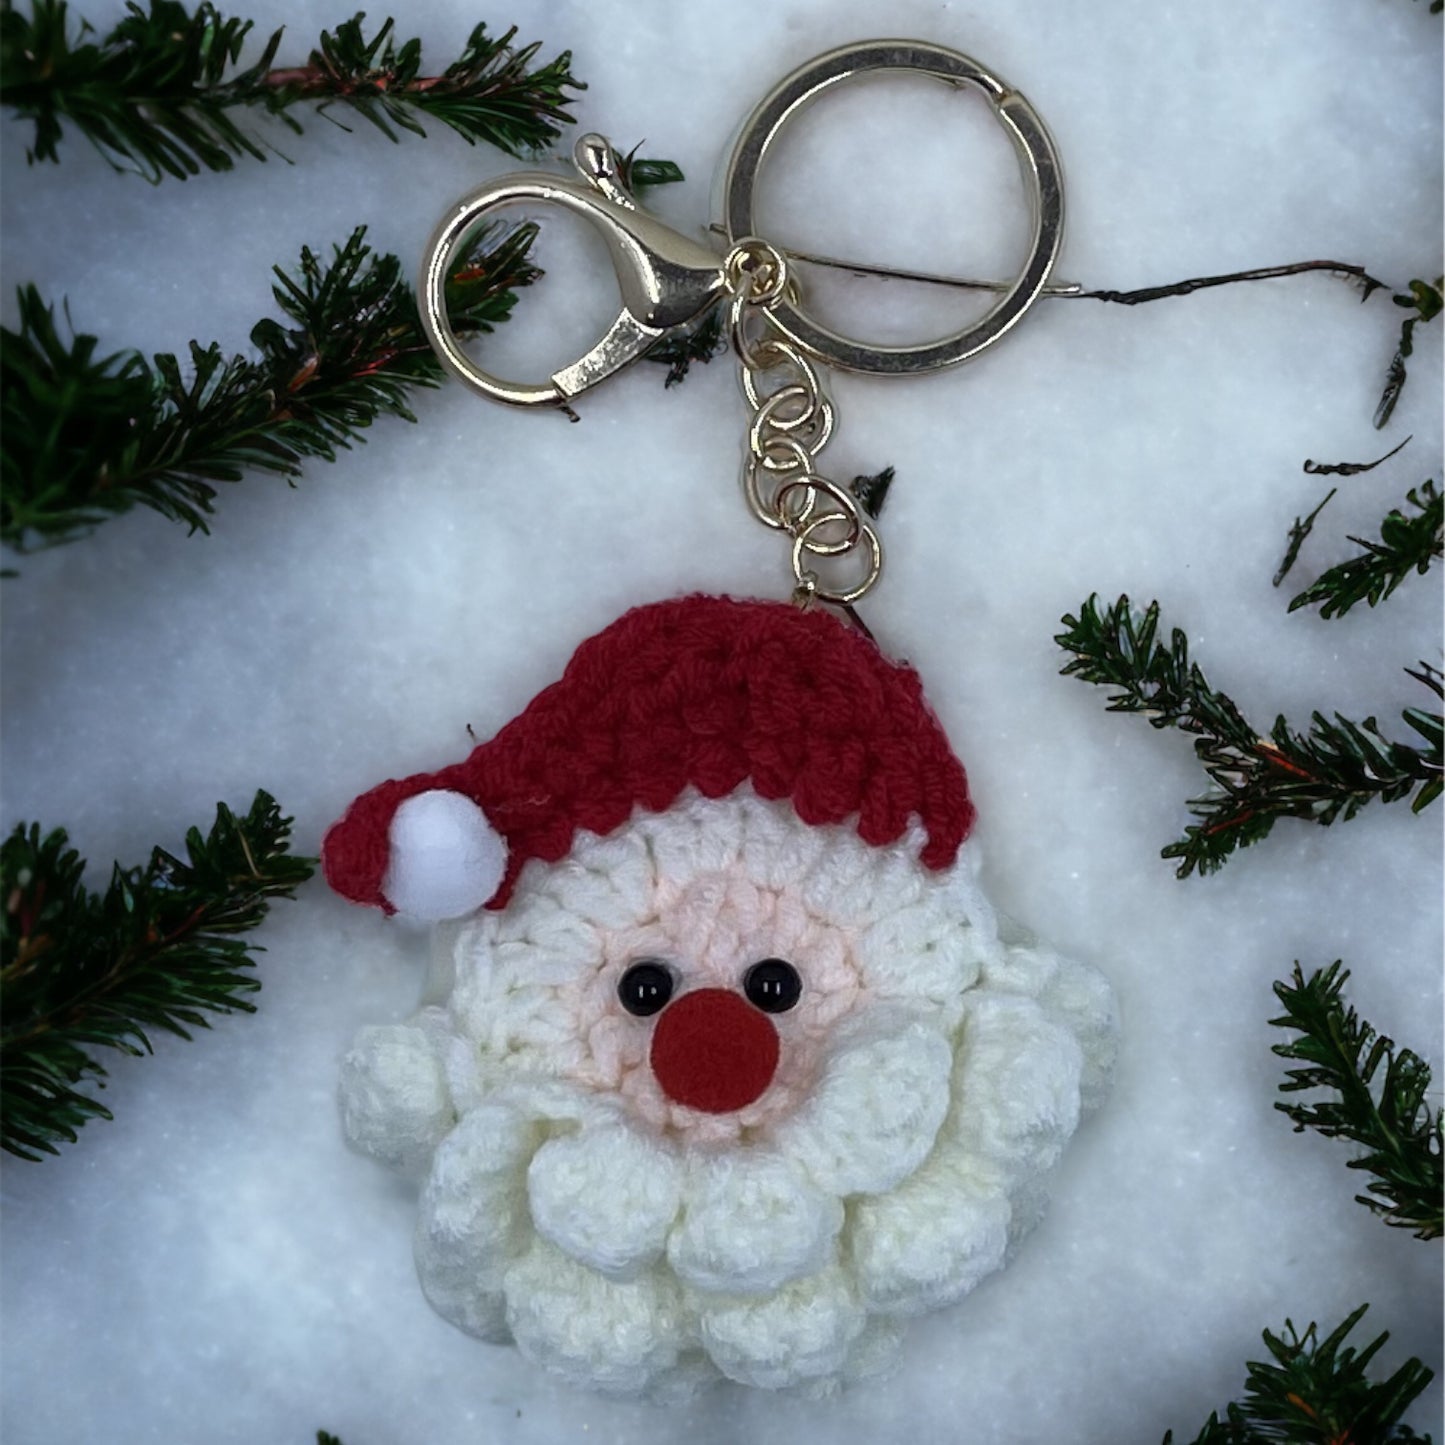 Hand crochet Santa keyring